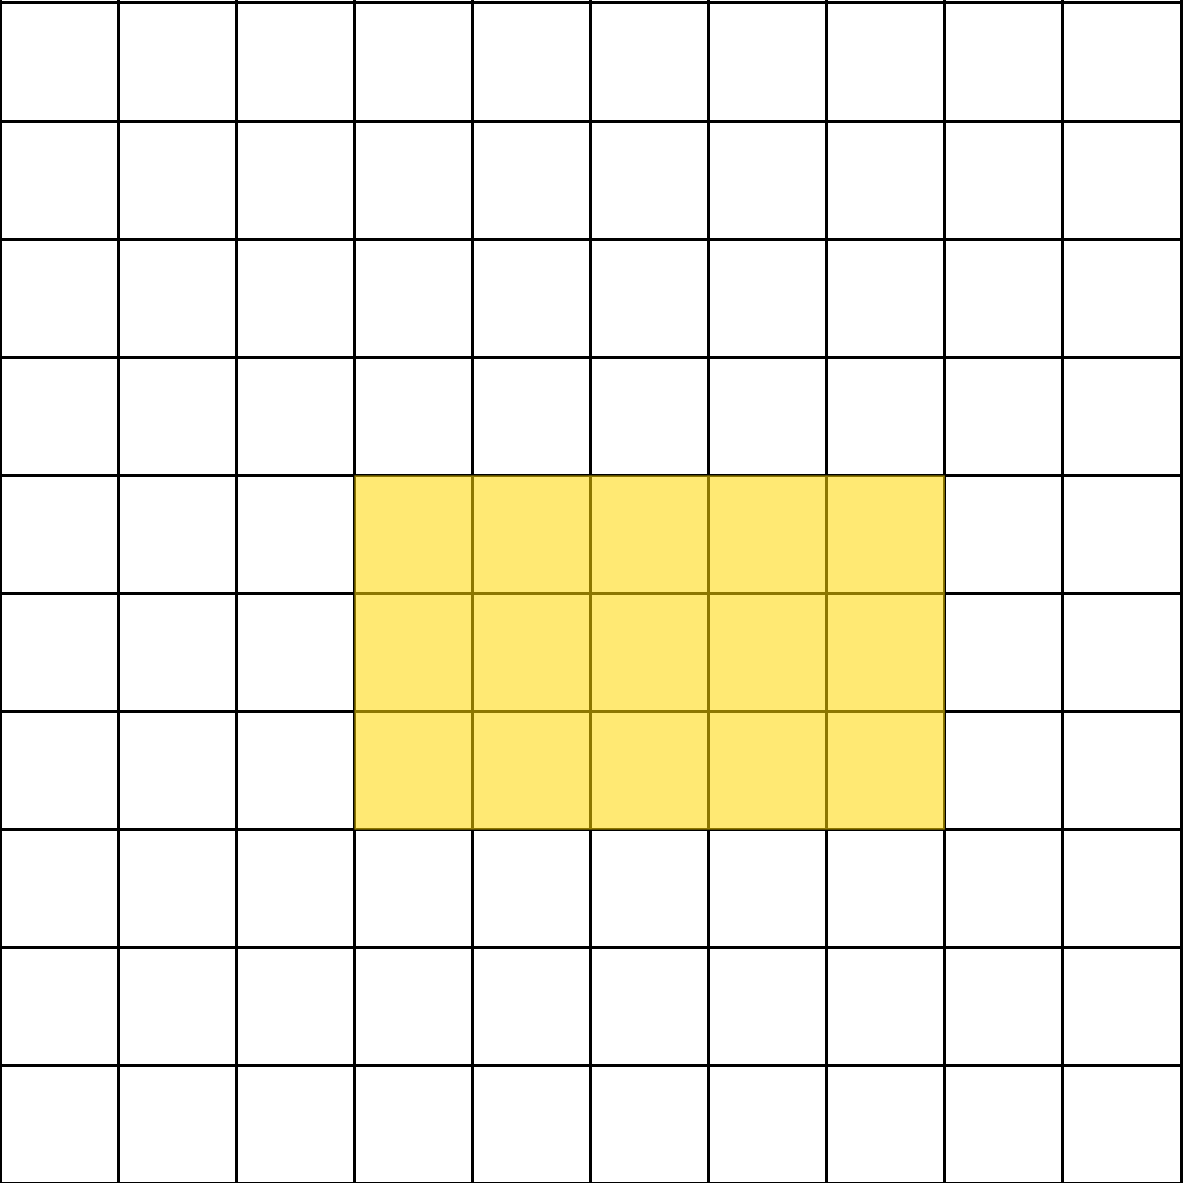 Ilustracija prikazuje kvadratnu mrežu 10x10 s 15 obojanih kvadratića.